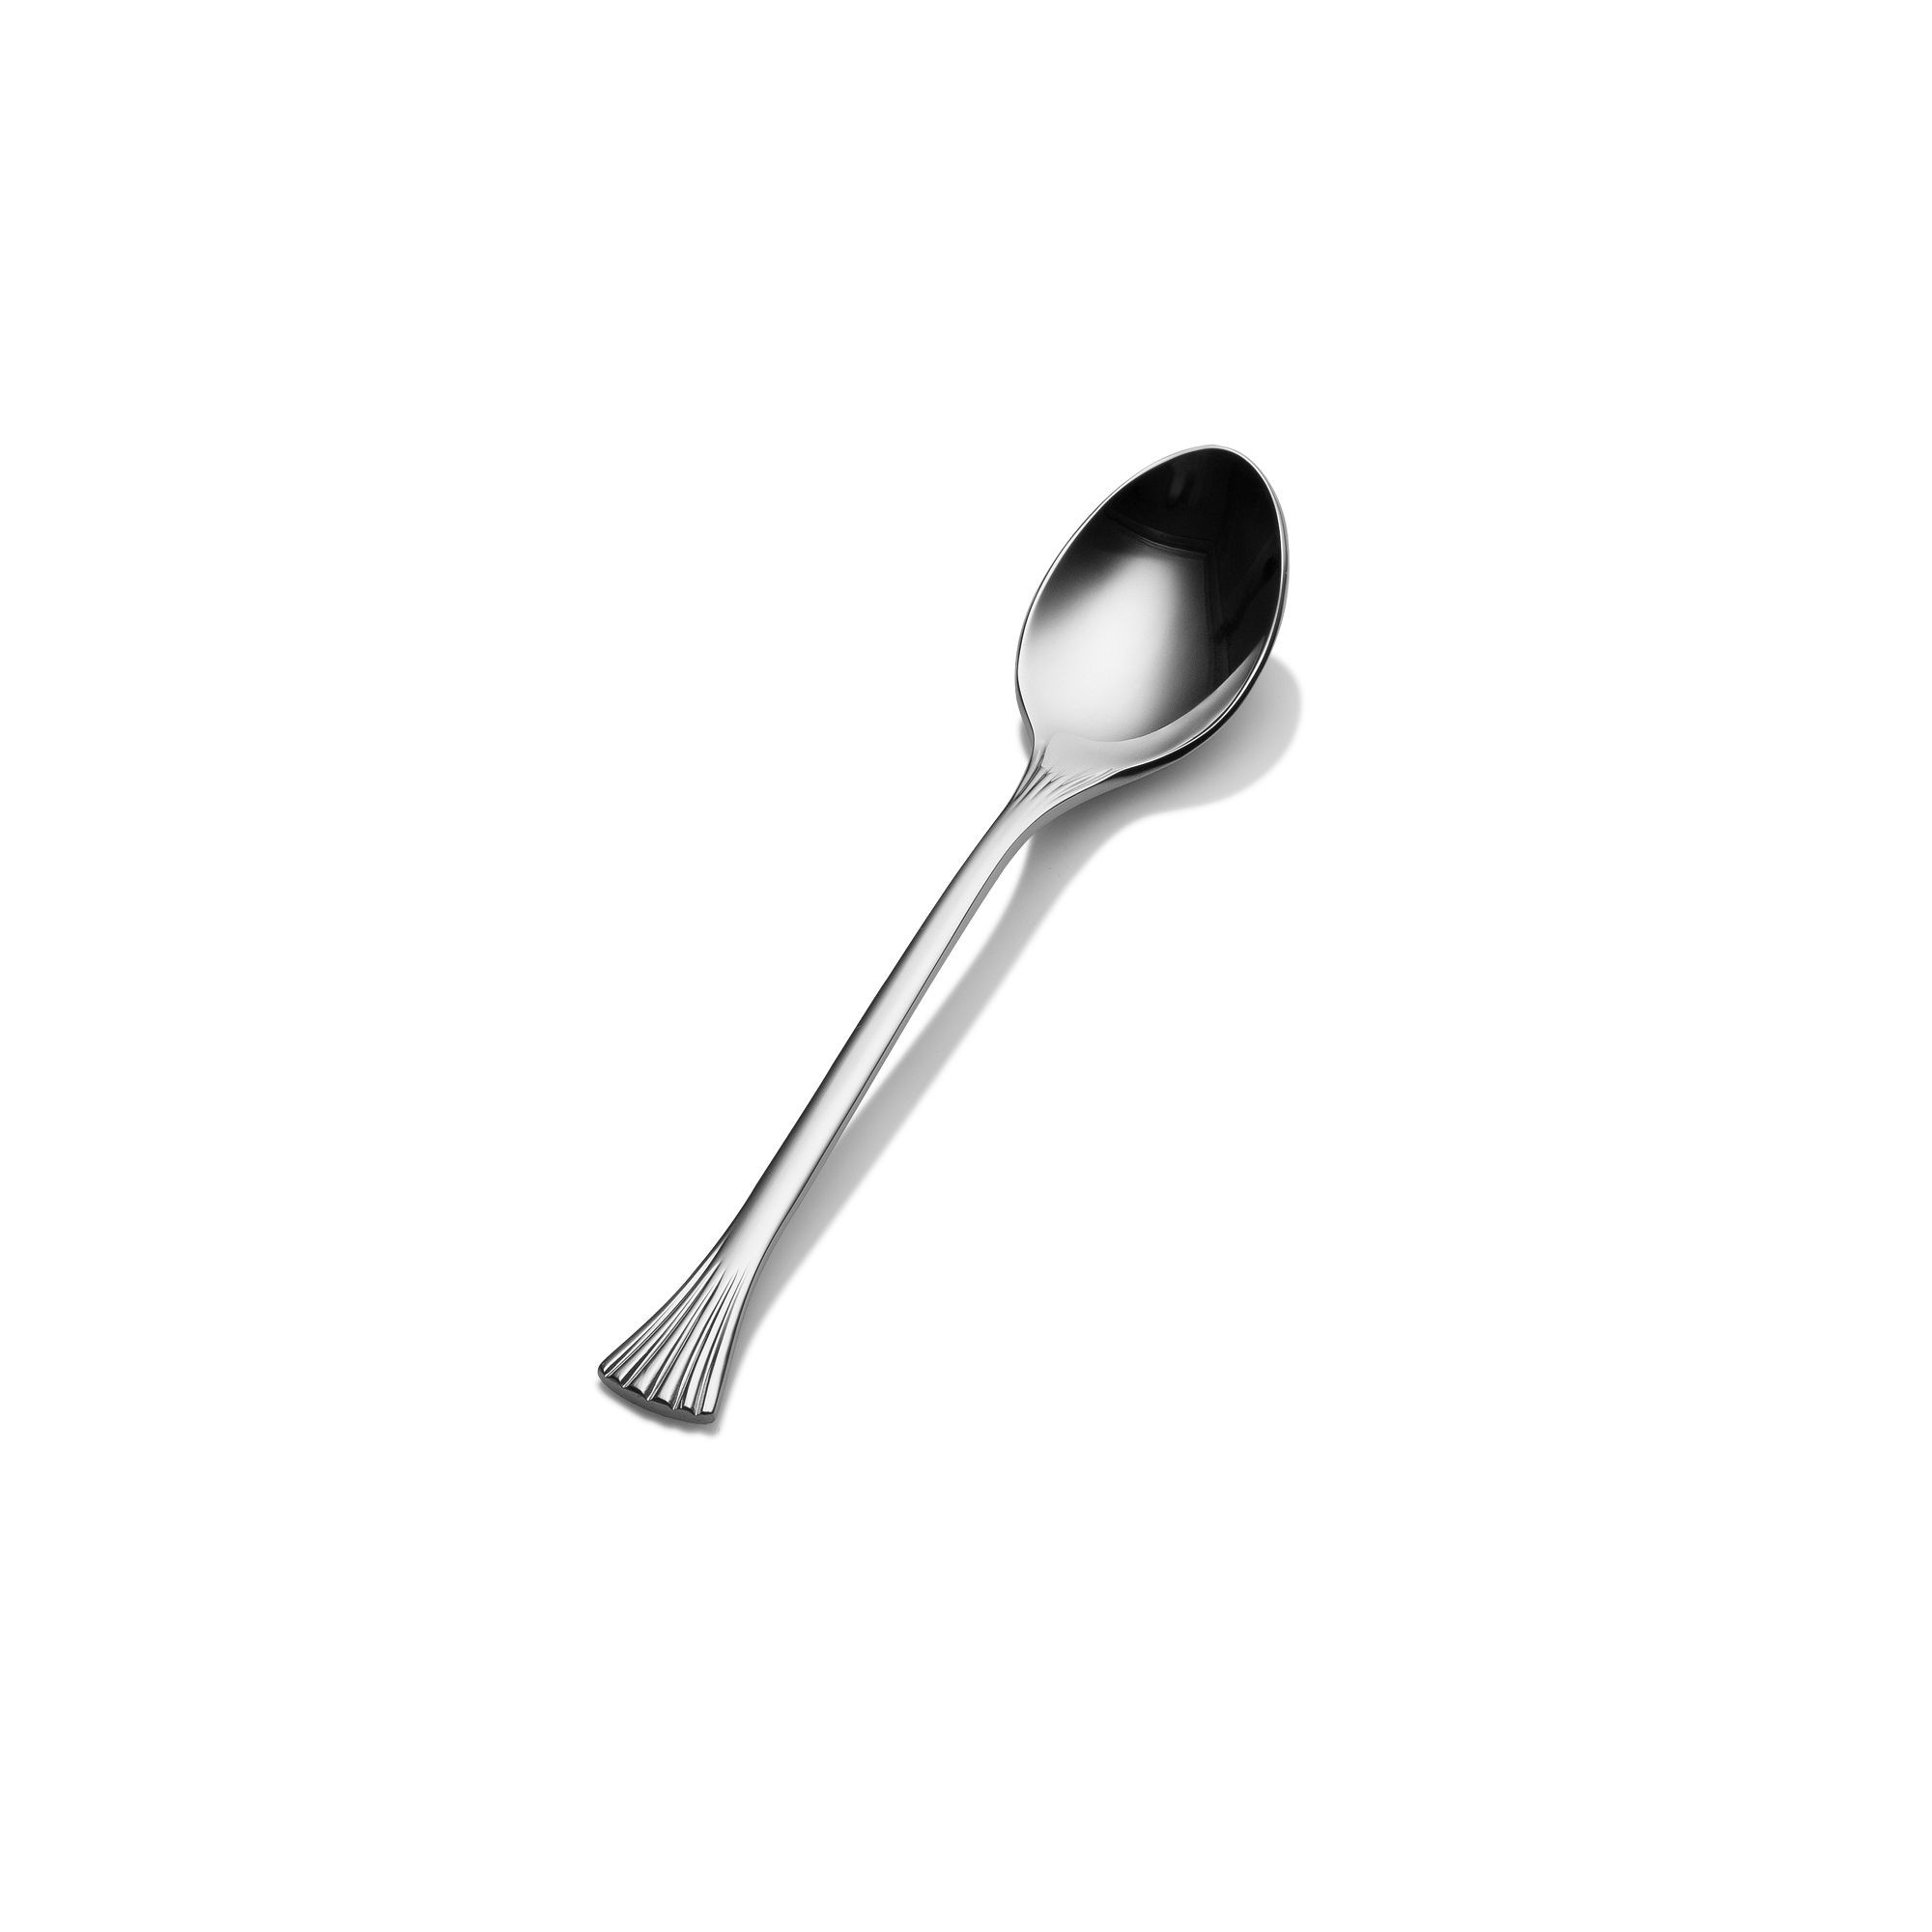 Bon Chef S2800 Mimosa 18/8 Stainless Steel Teaspoon